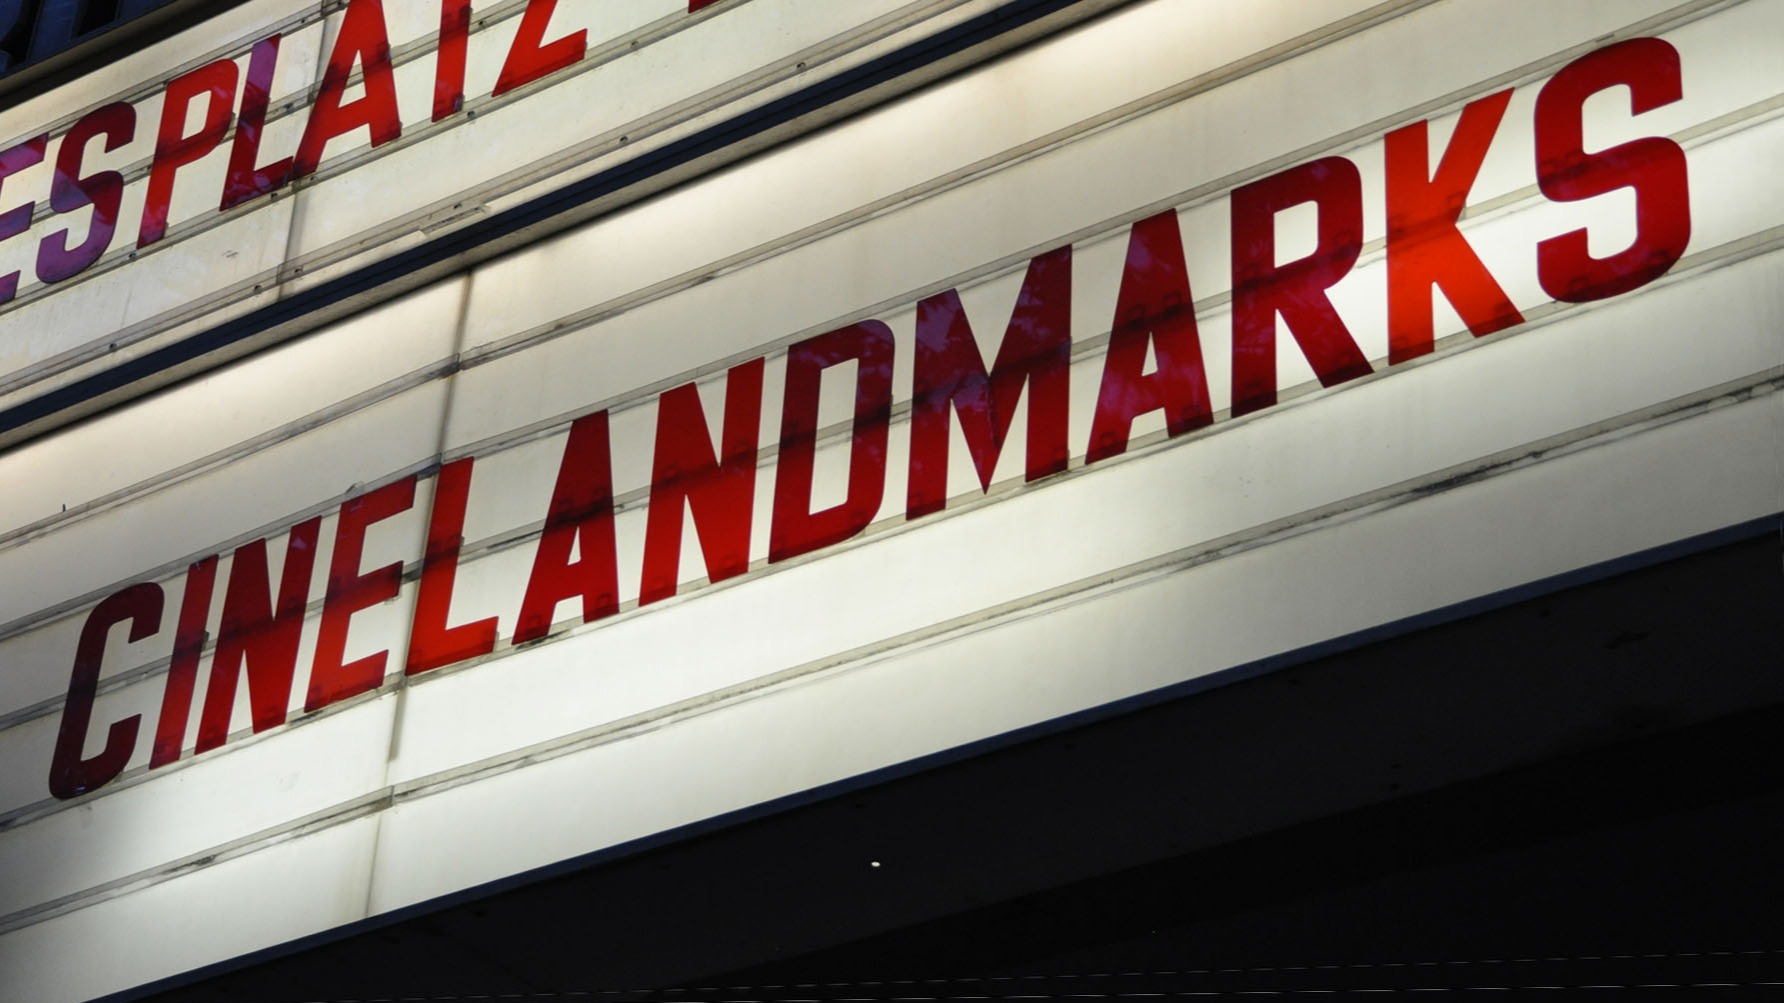 cinelandmarks Marque